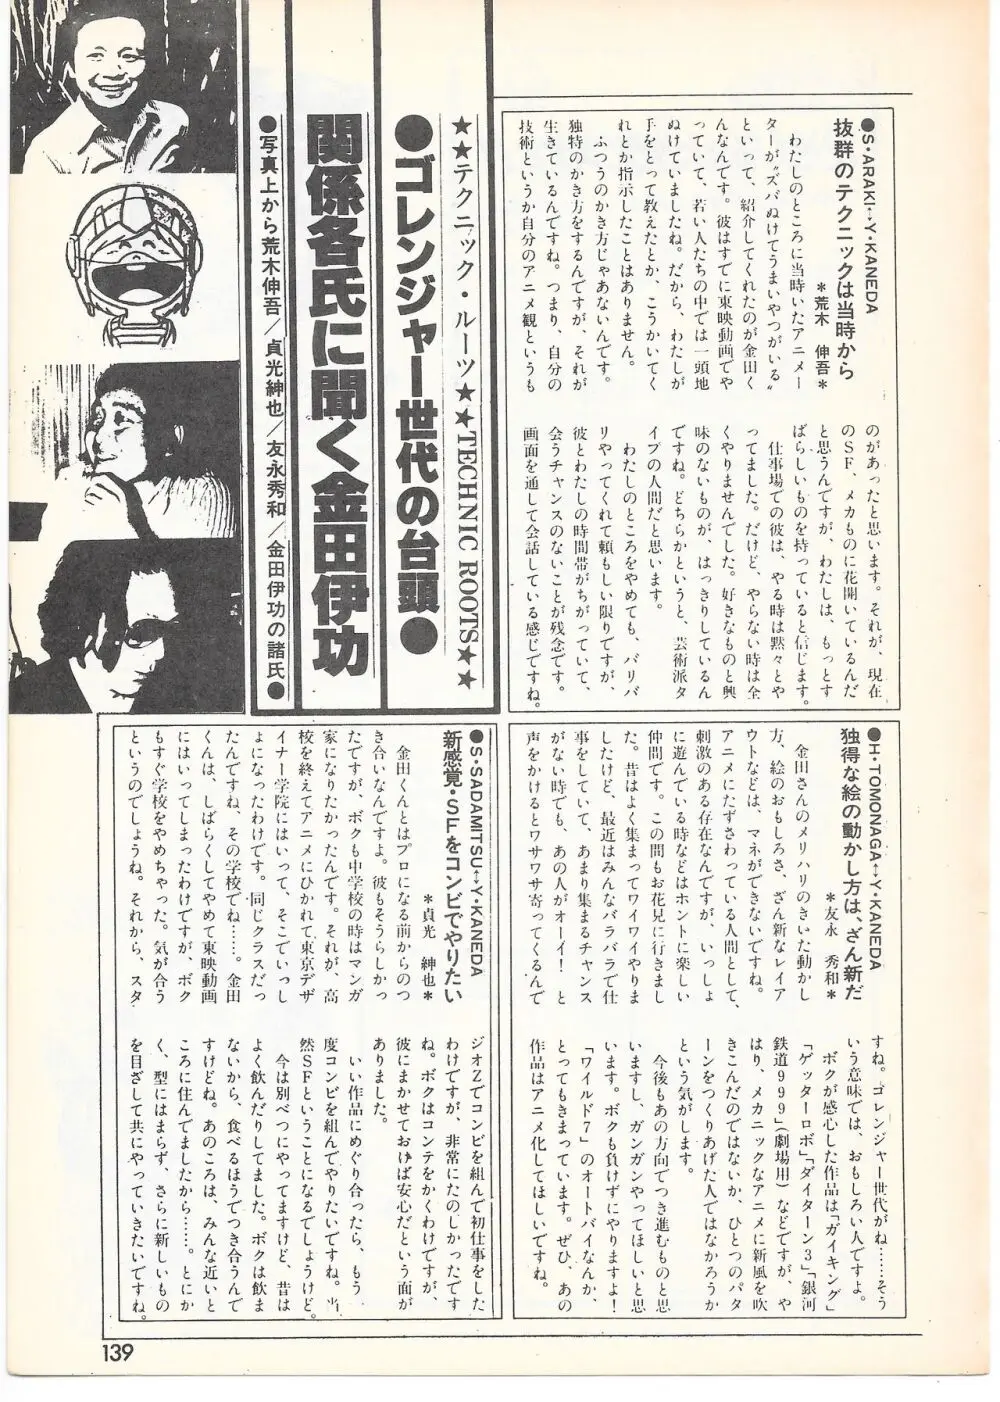 THE ANIMATOR 1 金田伊功特集号 134ページ